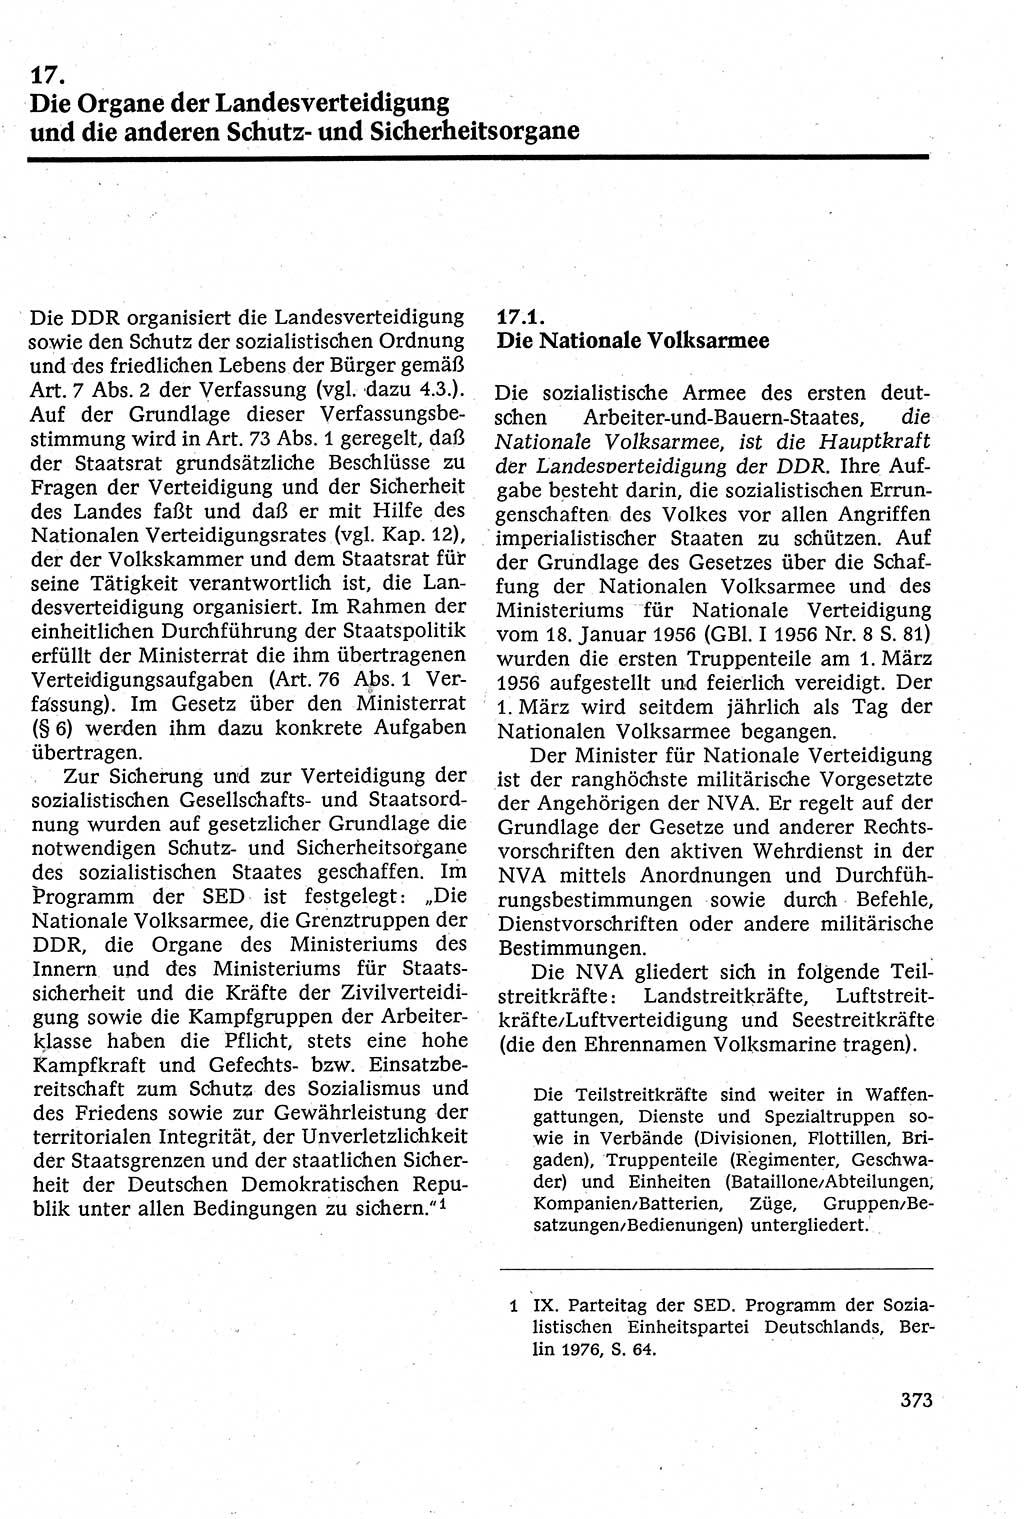 Staatsrecht der DDR [Deutsche Demokratische Republik (DDR)], Lehrbuch 1984, Seite 373 (St.-R. DDR Lb. 1984, S. 373)